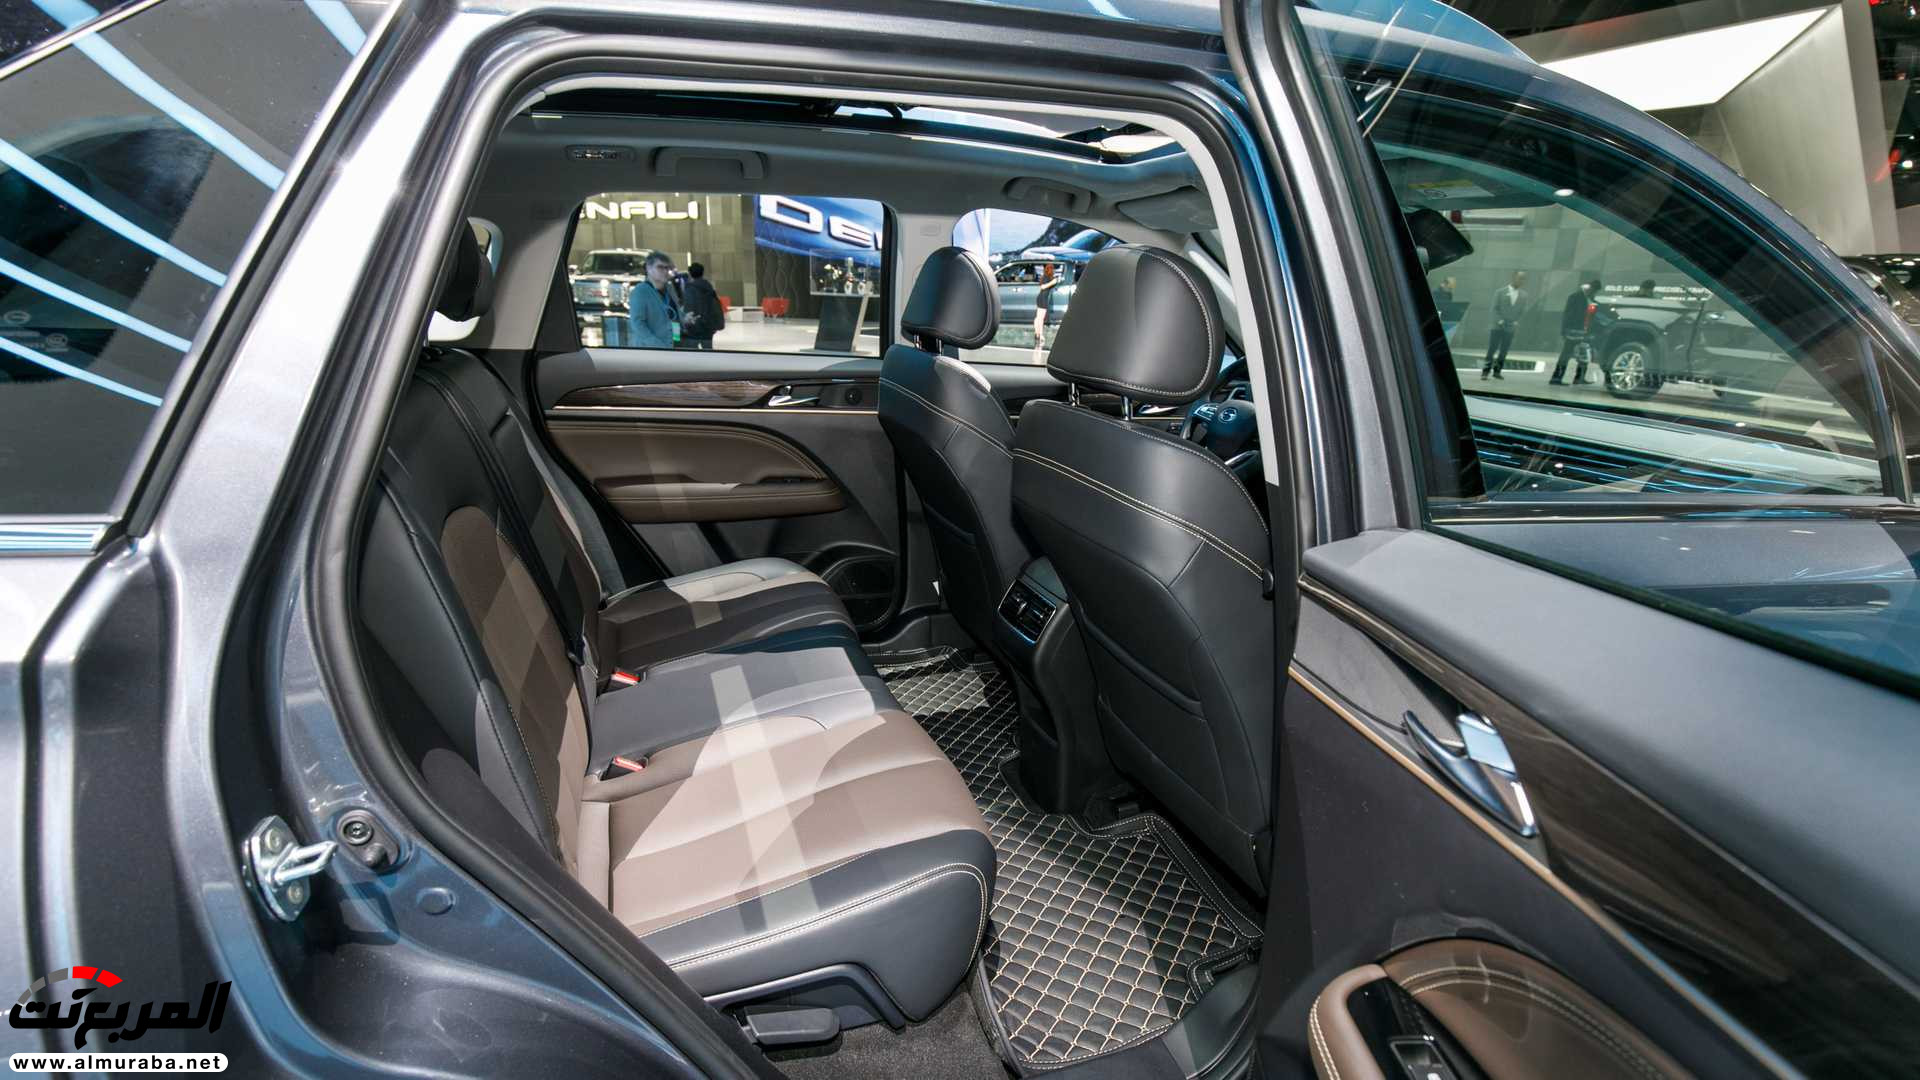 "80 صورة" نظرة على سيارات جي ايه سي في معرض ديترويت للسيارات 2019 233